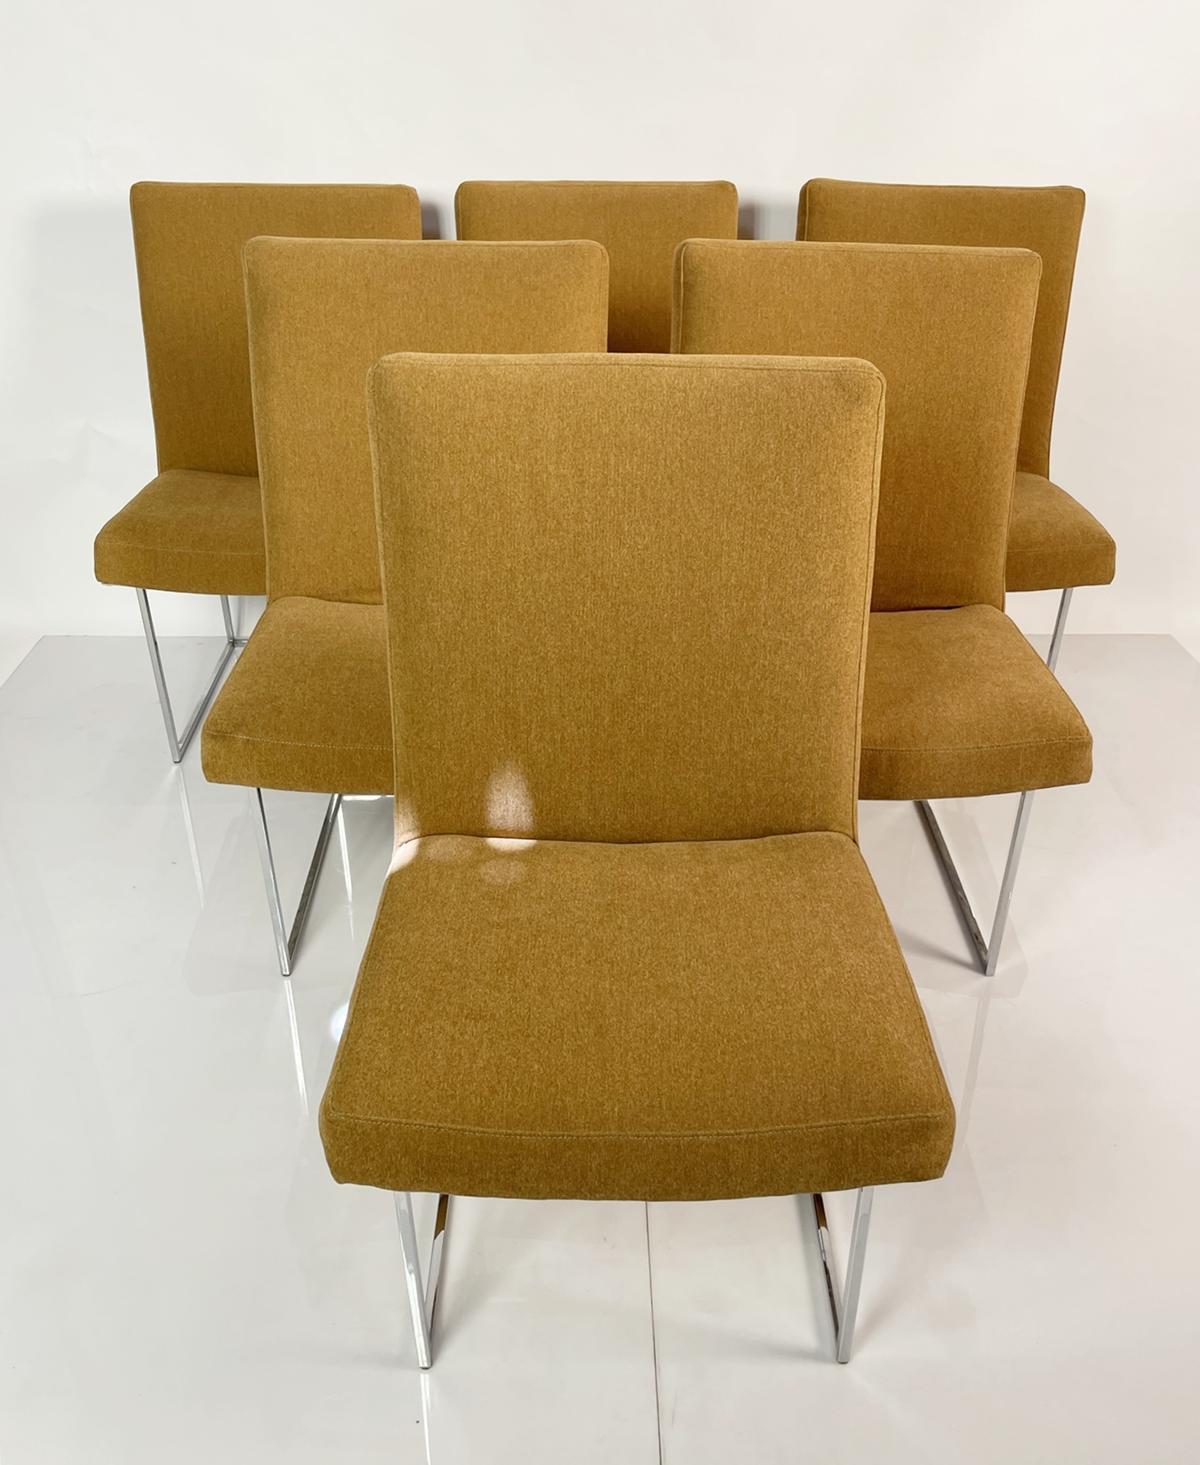 Voici l'ensemble de six chaises de salle à manger par Milo Baughman pour Thayer Sleg - une collection étonnante de chaises qui apportent élégance et style à votre salle à manger. Conçues par le célèbre designer Milo Baughman et fabriquées dans les